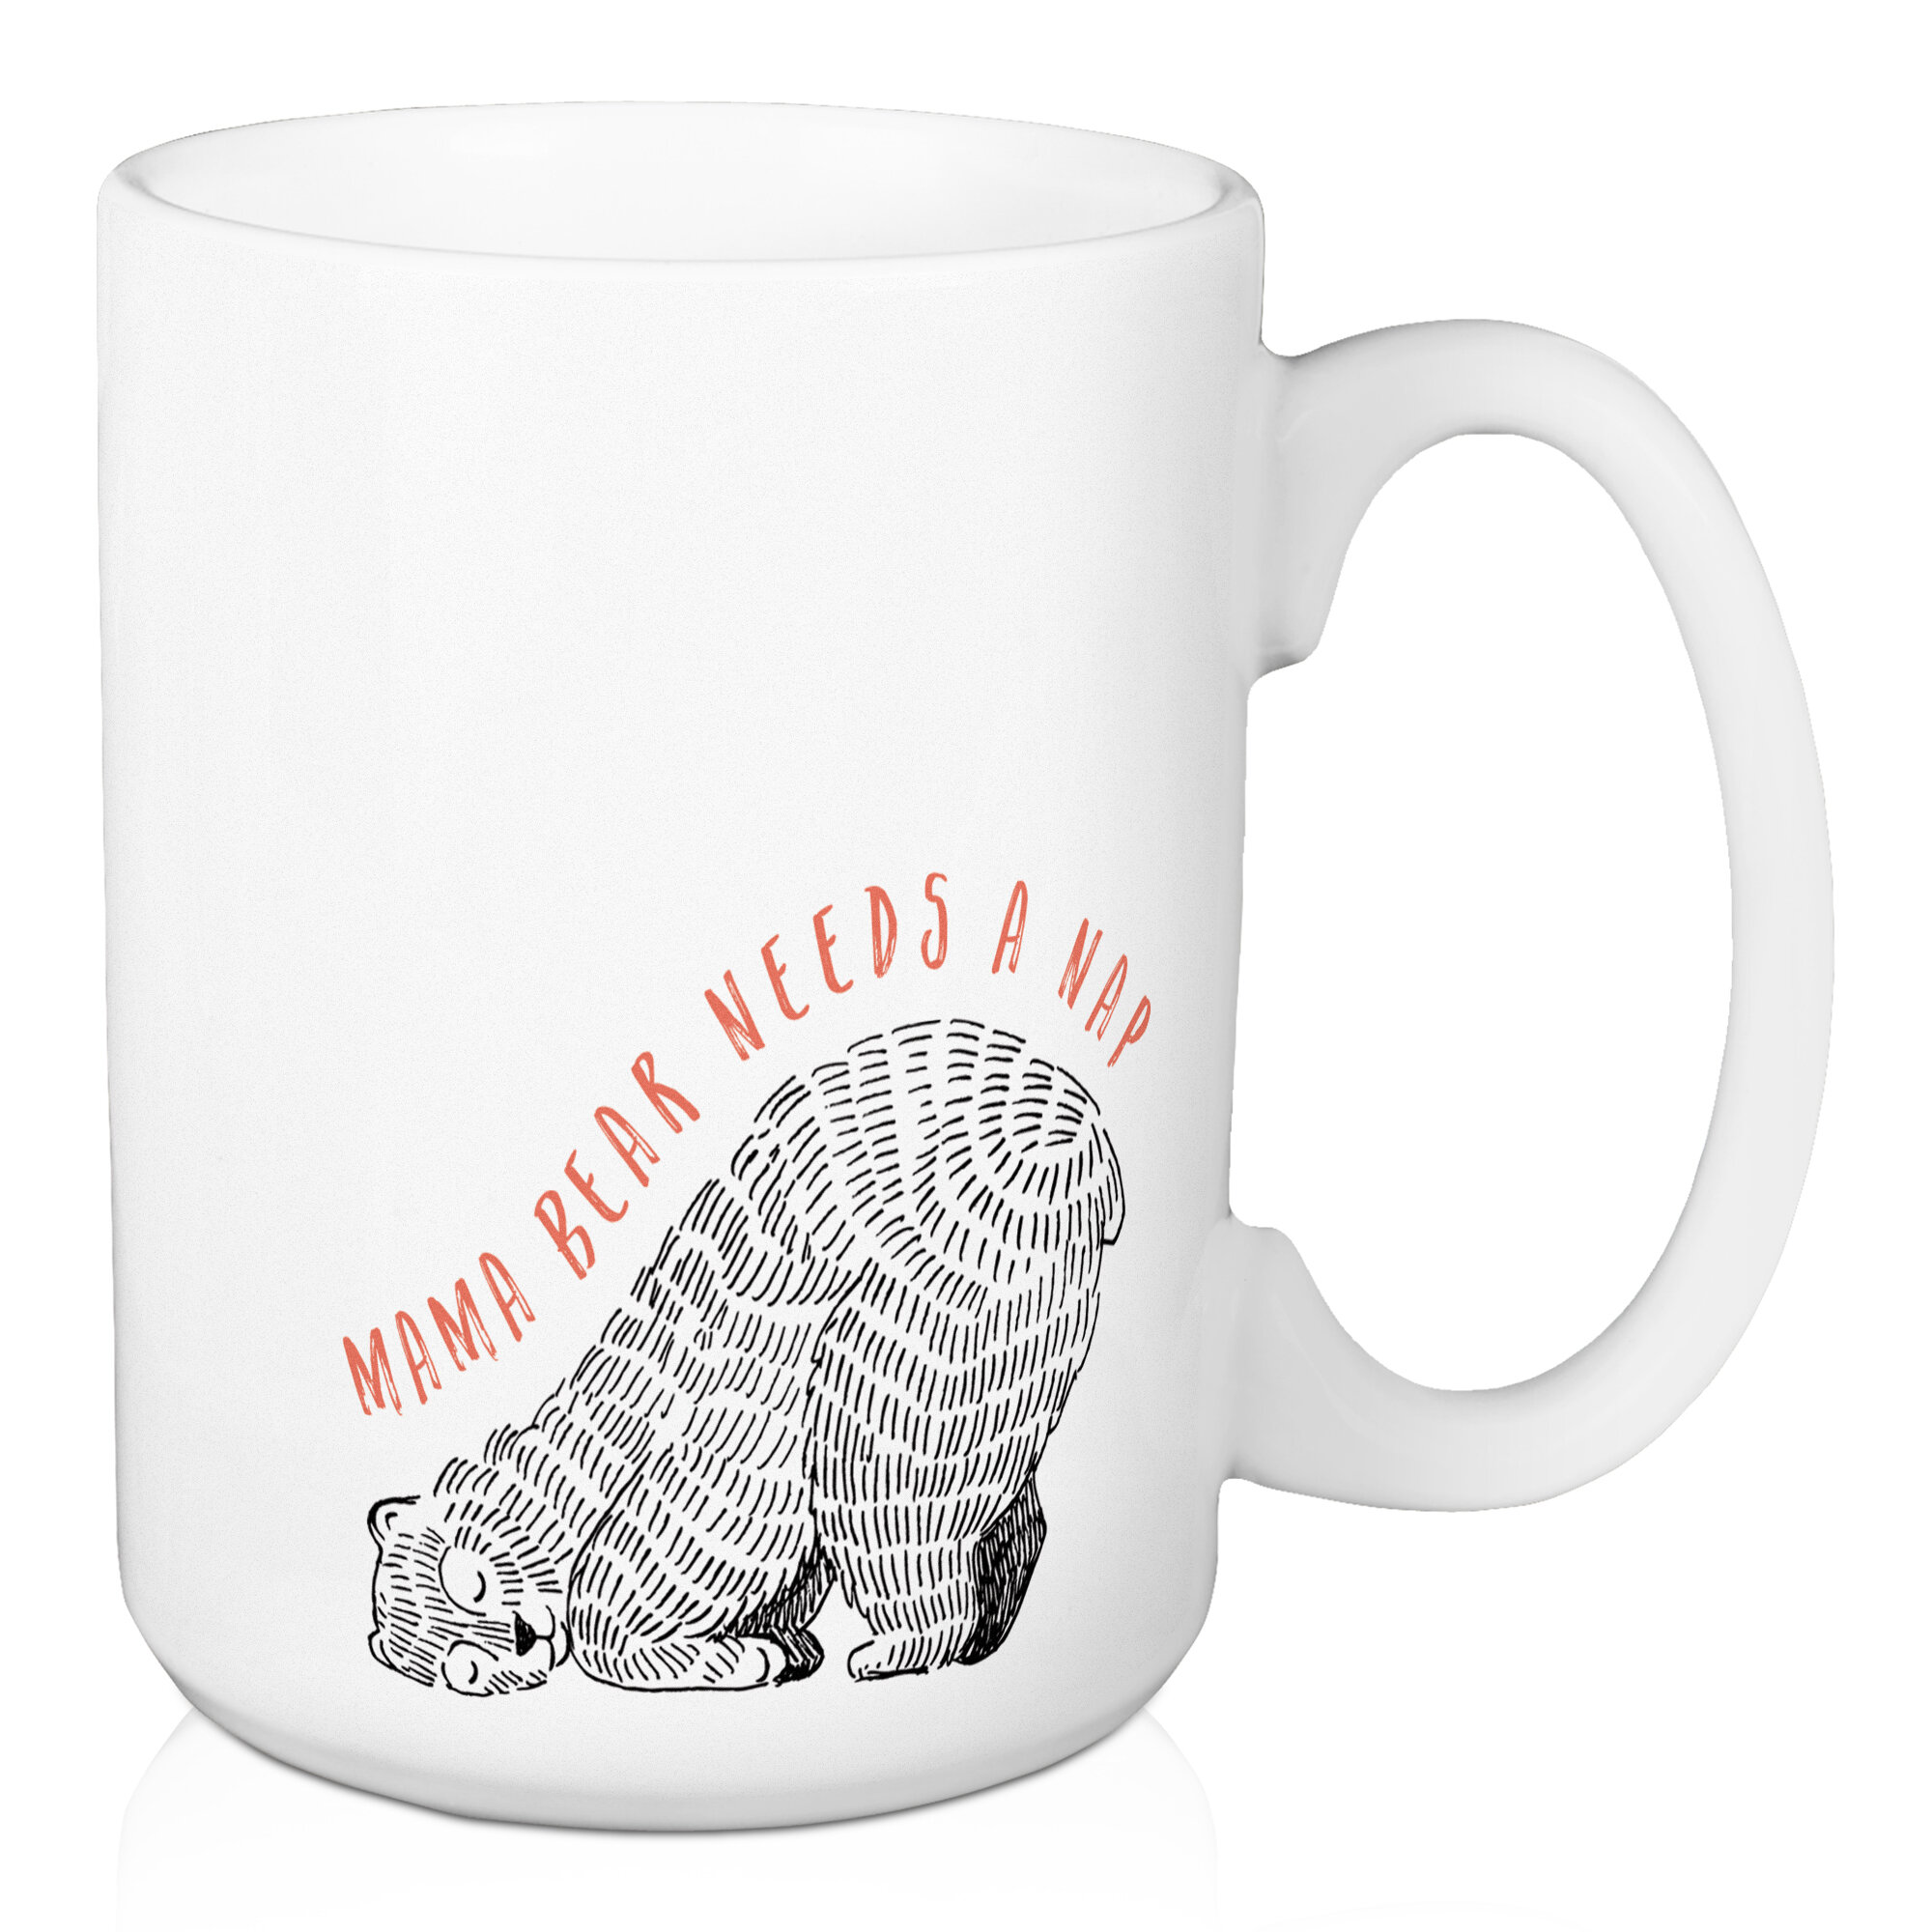 https://assets.wfcdn.com/im/18127285/compr-r85/5694/56940687/gilliam-ceramic-coffee-mug.jpg